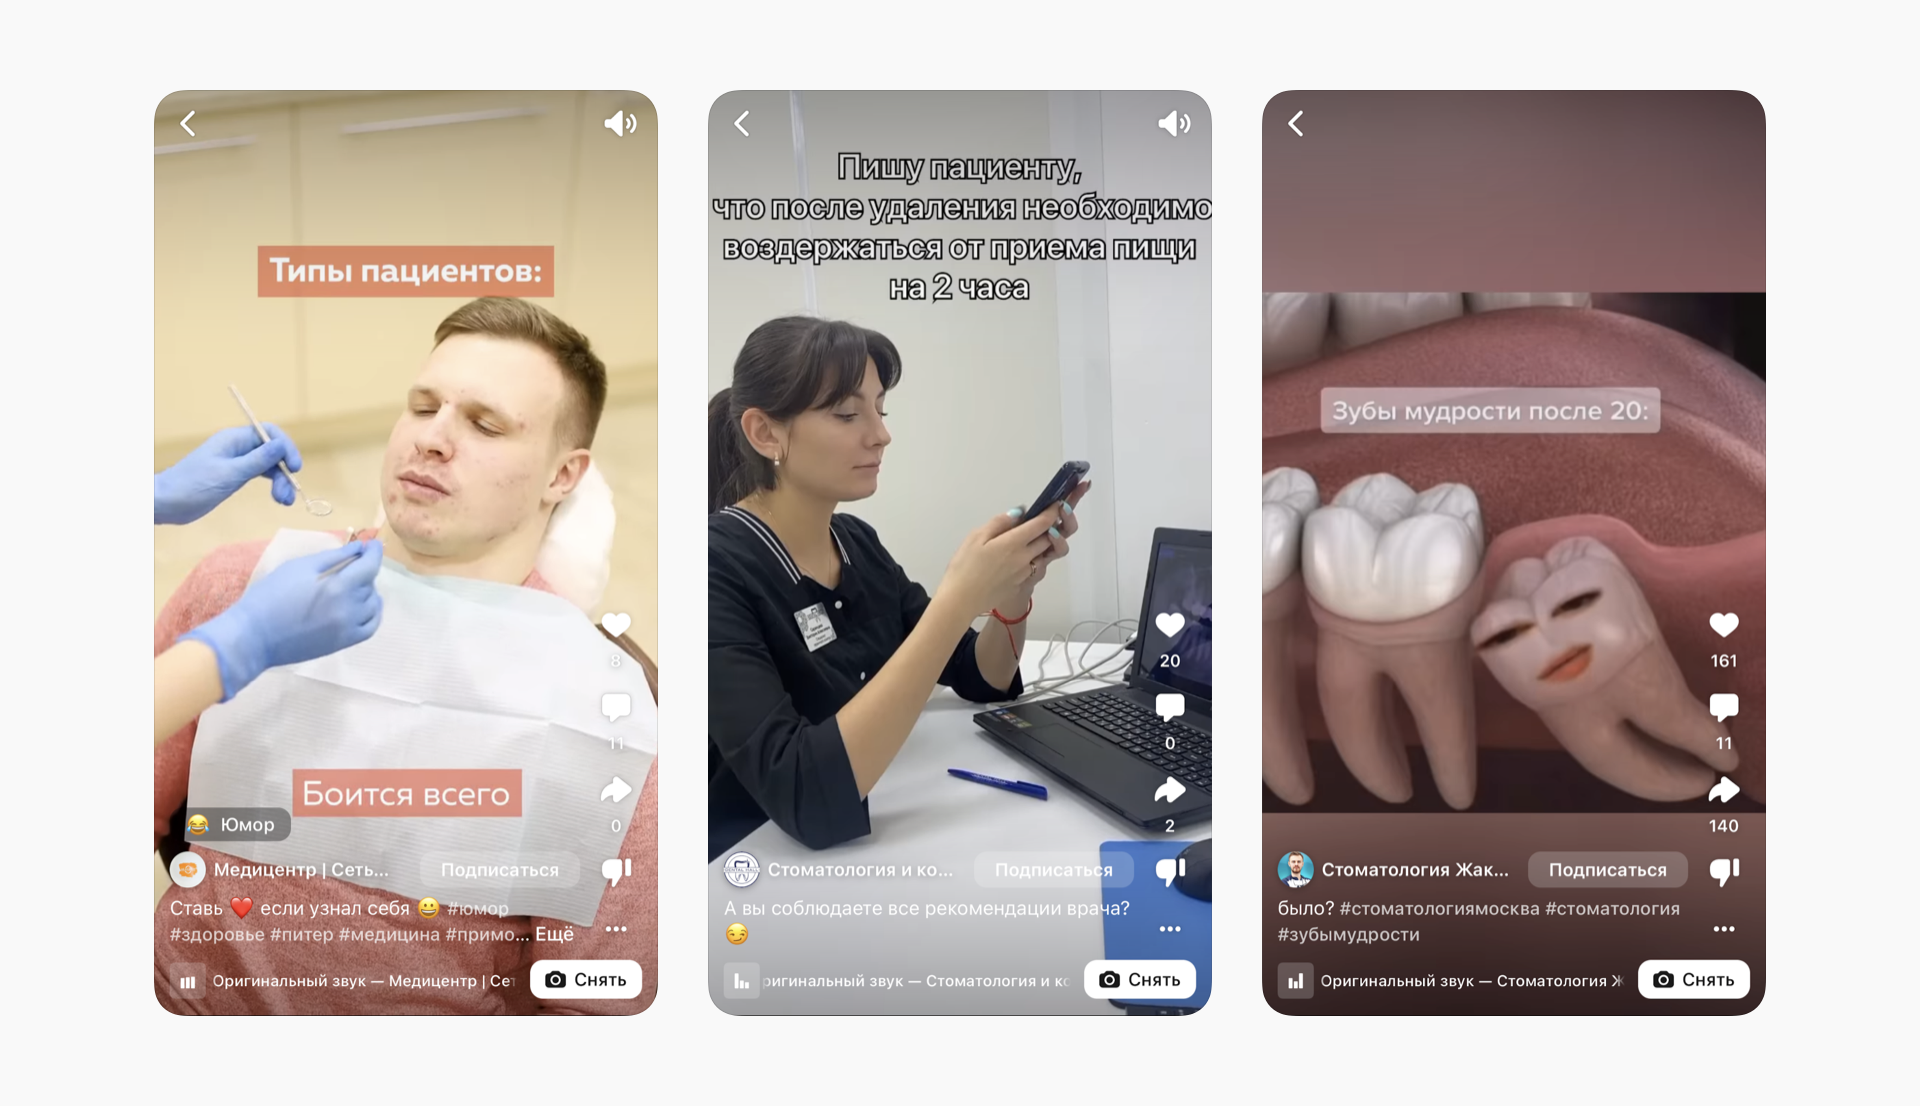 Пример клипов по стоматологии в ВКонтакте